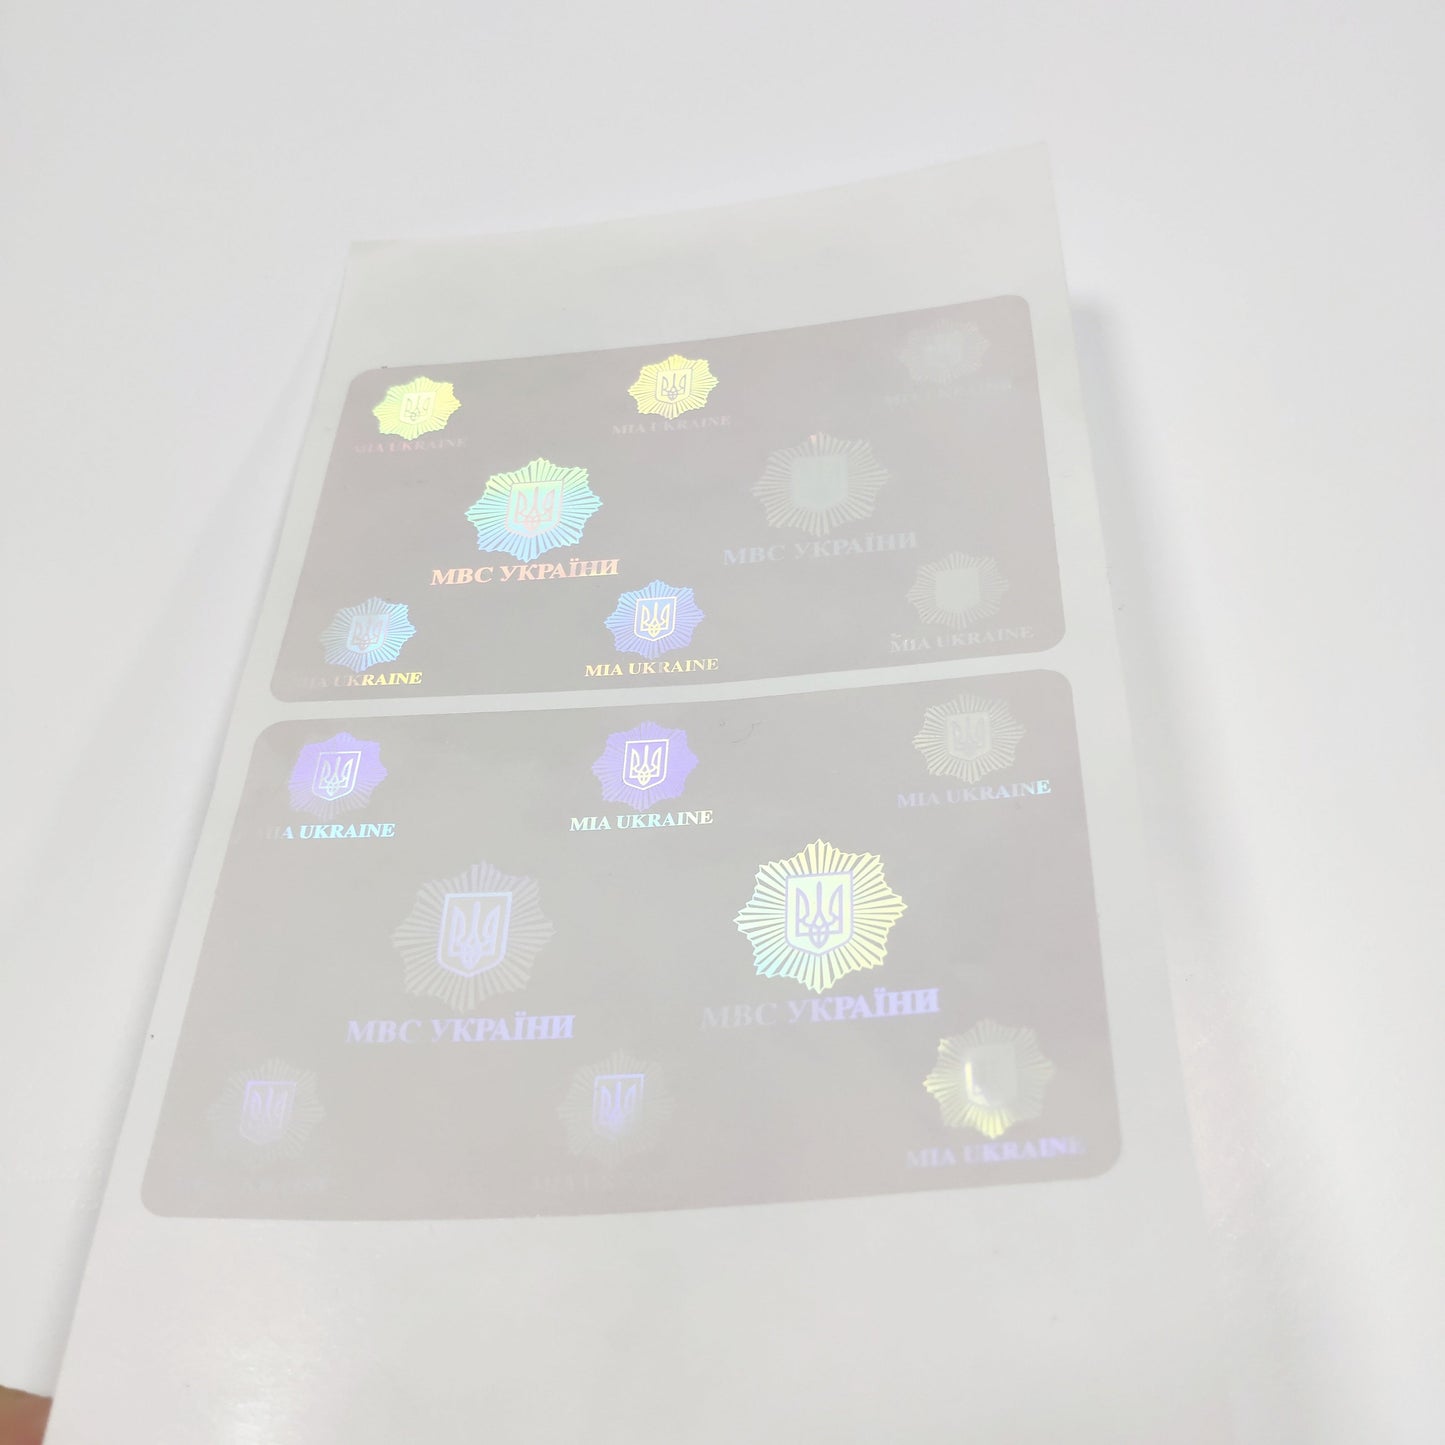 86*54mm Custom holographic overlay sticker/ transparent laser hologram label